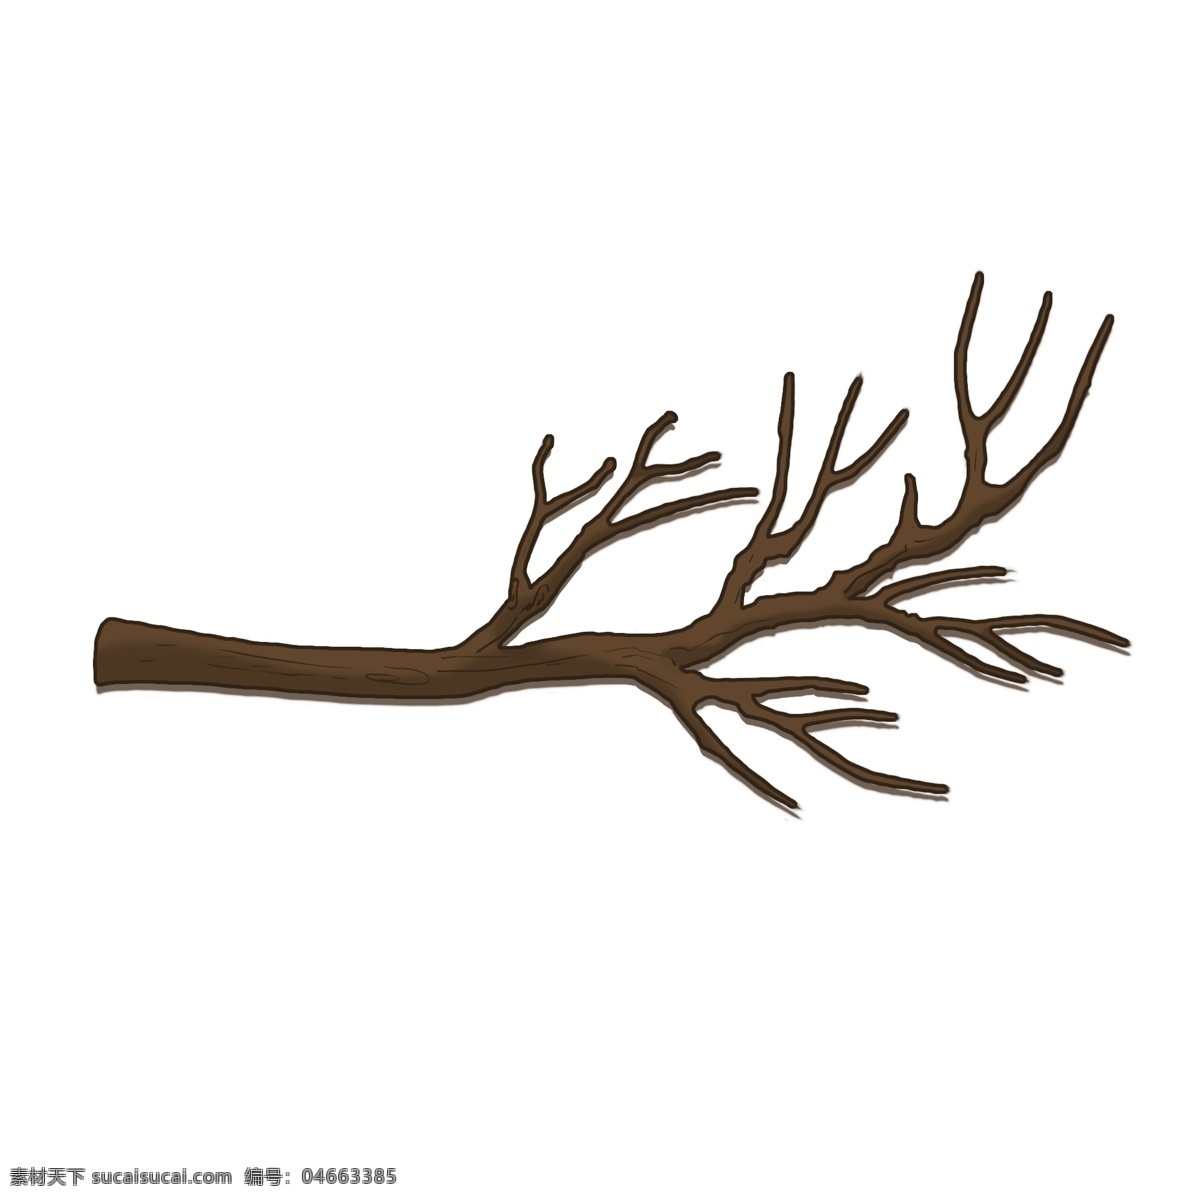 卡通 手绘 枯树枝 图 png格式 树枝 可爱的树枝 单独的 扁平化的 冬季 psd文件